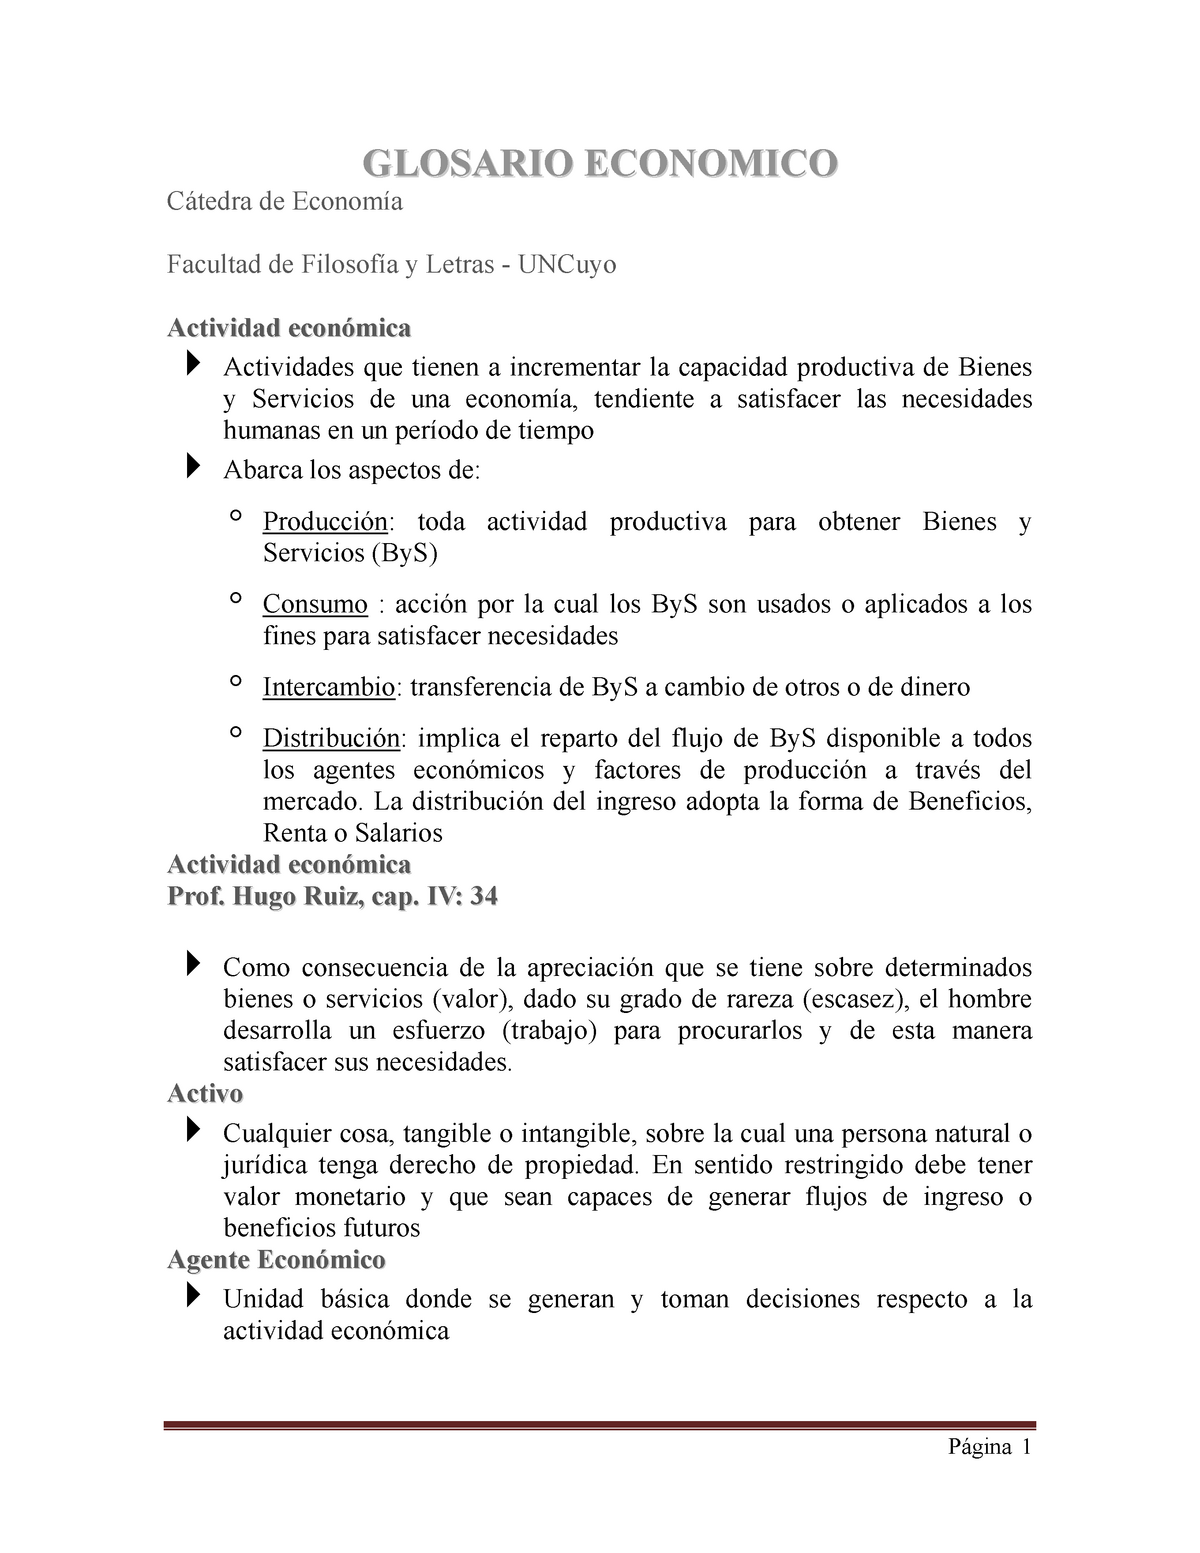 Examen 2016, respuestas - GLOSARIO ECONOMICO de Facultad de y Letras UNCuyo  Actividad Actividades - Studocu